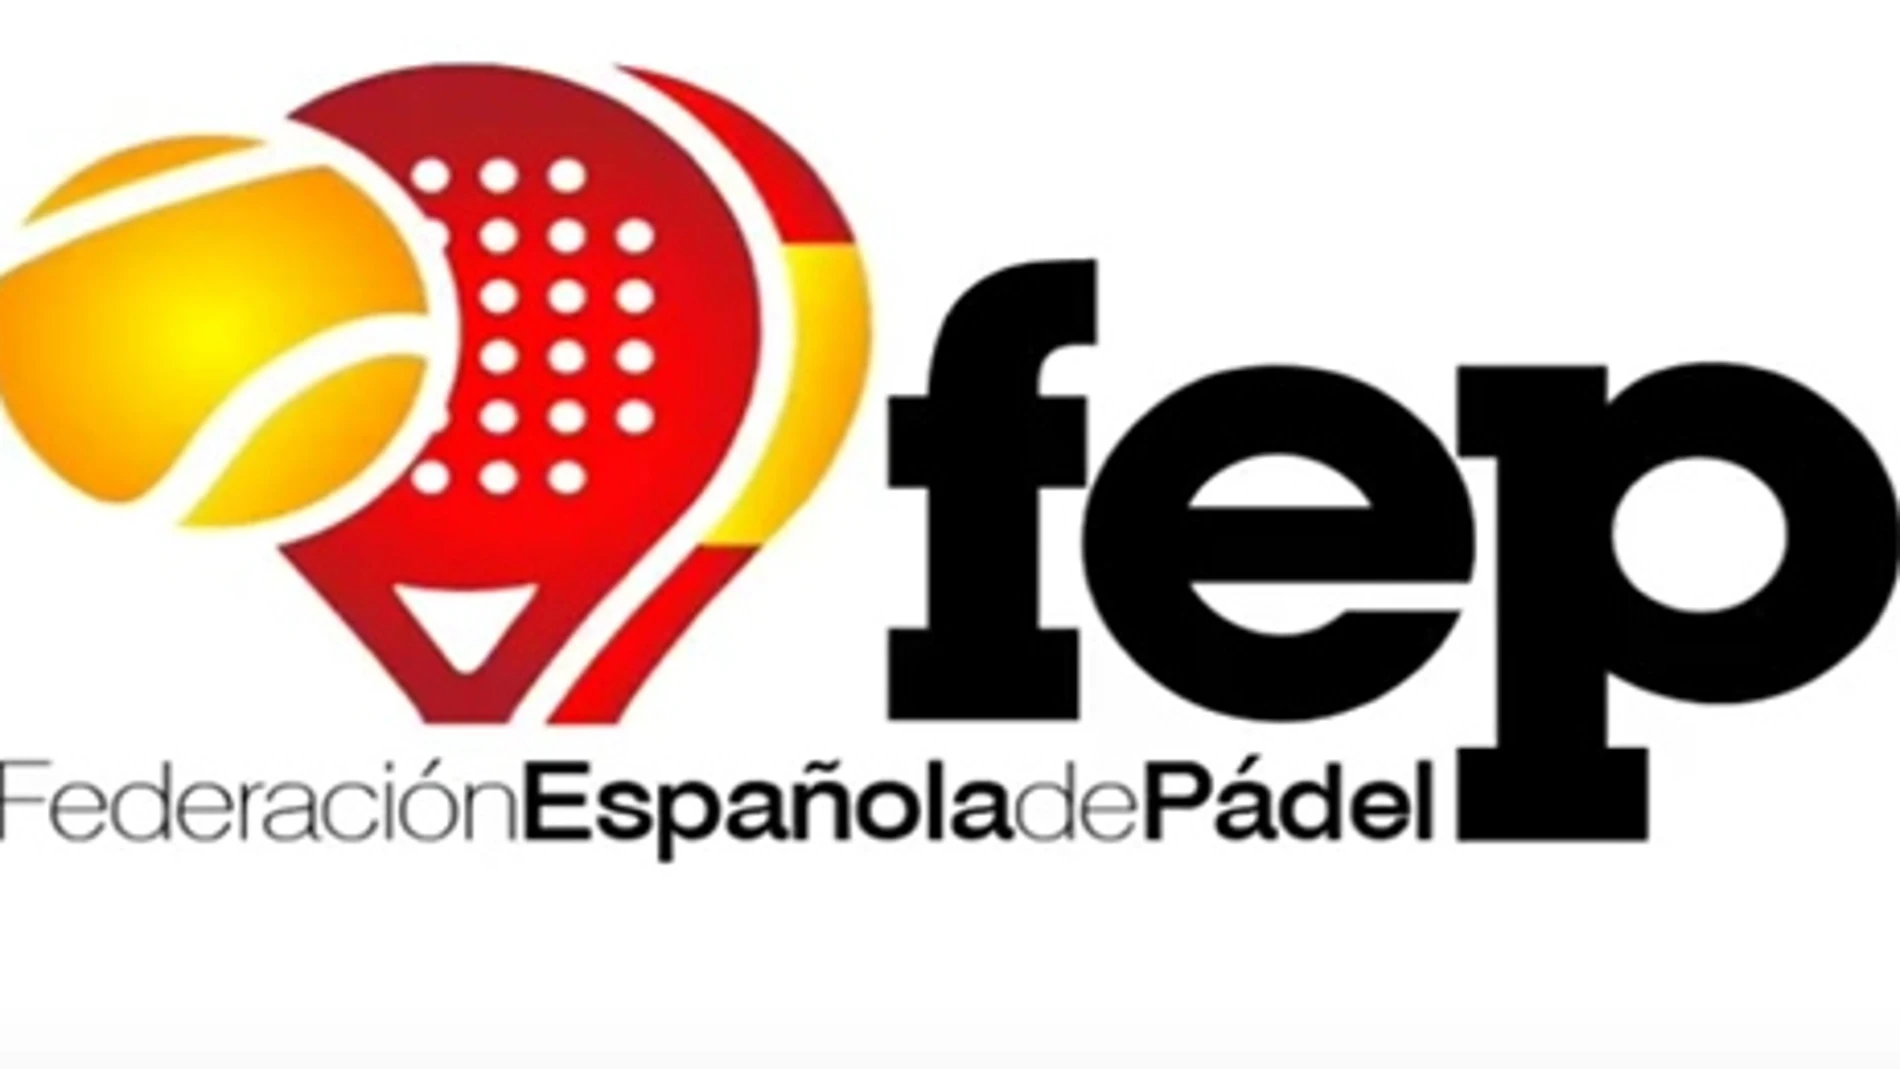 Federación Española de Pádel